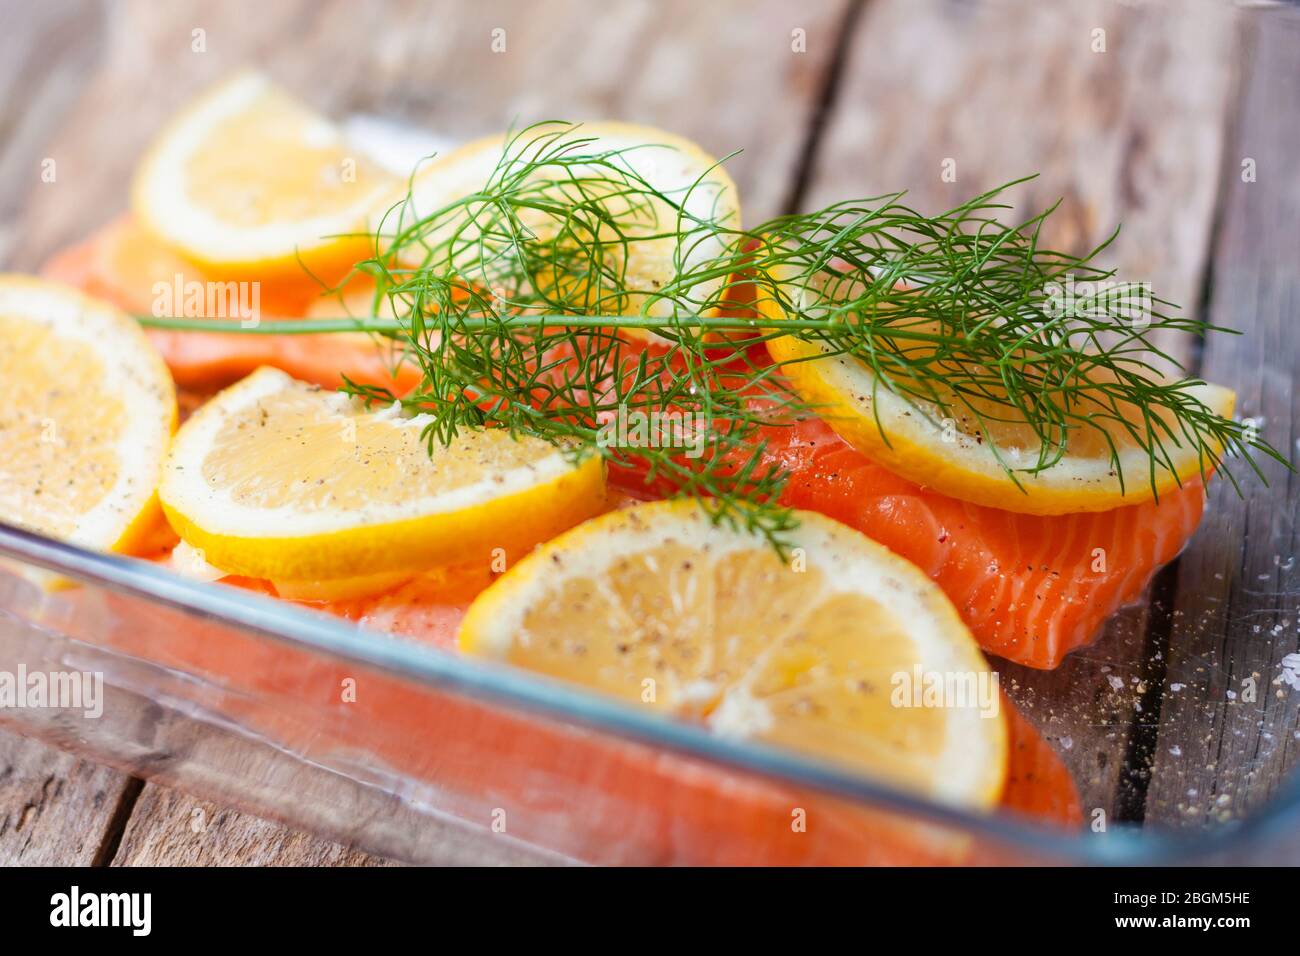 Filetti di pesce rosso o salmone in vetro da forno su sfondo di legno. Pesce fresco, limone e aneto per cucinare gli ingredienti. Foto Stock